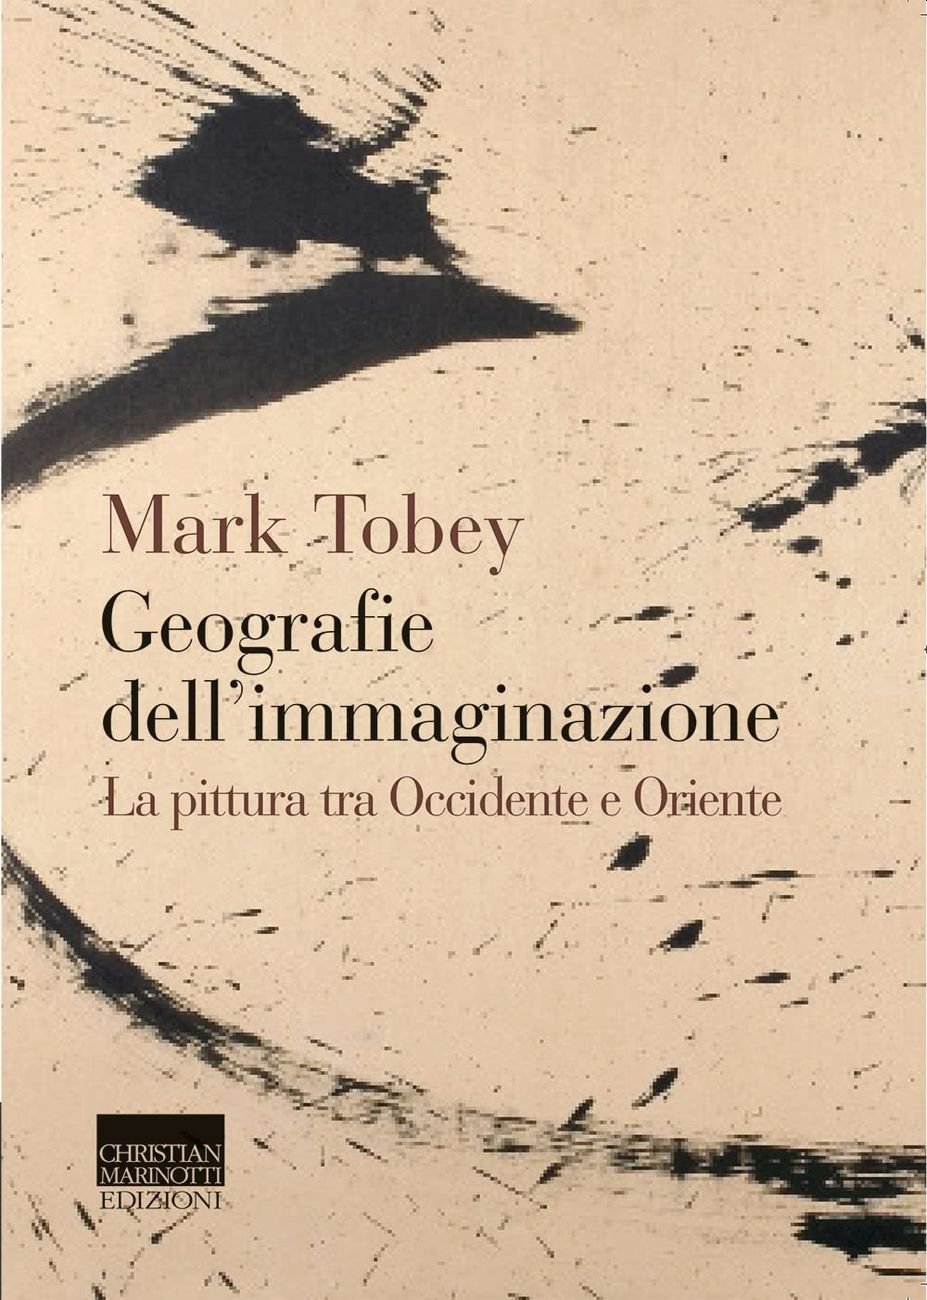 Mark Tobey – Geografie dell'immaginazione (Christian Marinotti, Milano 2021)